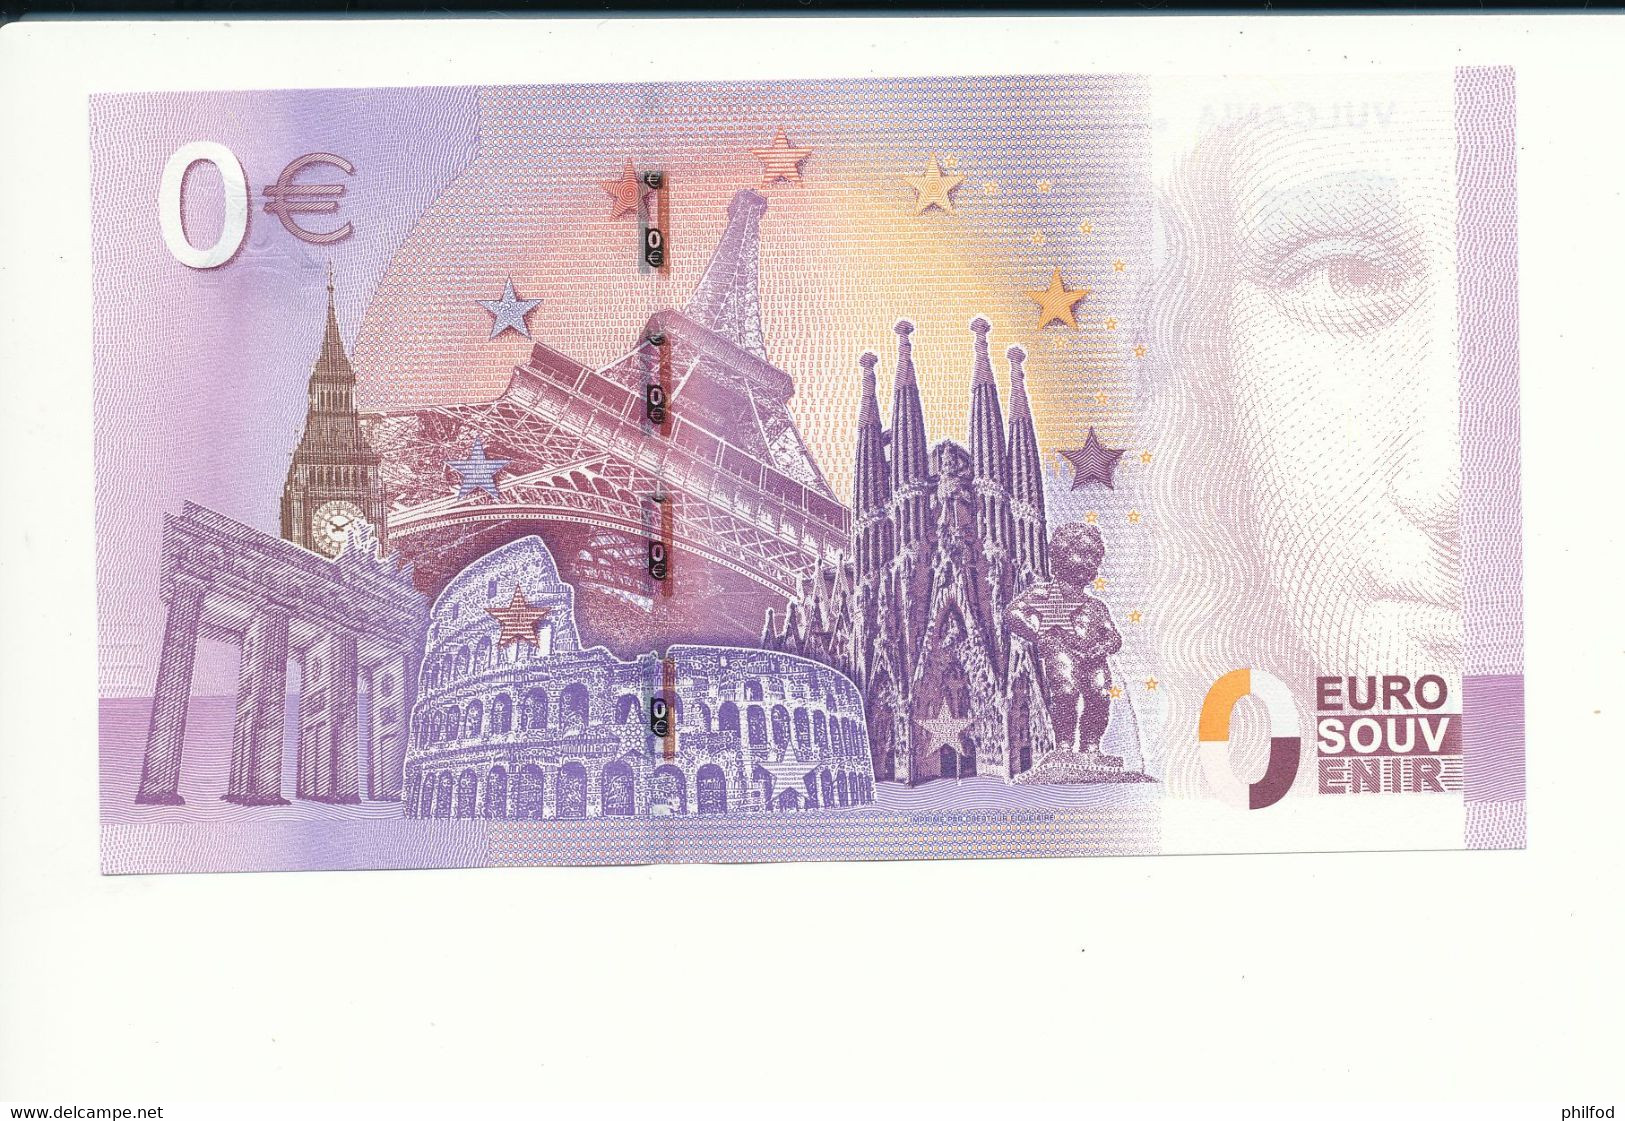 Billet Souvenir - 0 Euro - UEAF - 2017-3 - VULCANIA SUR LES TRACES DES DINOSAURES -  N° 1027 - Billet épuisé - Vrac - Billets